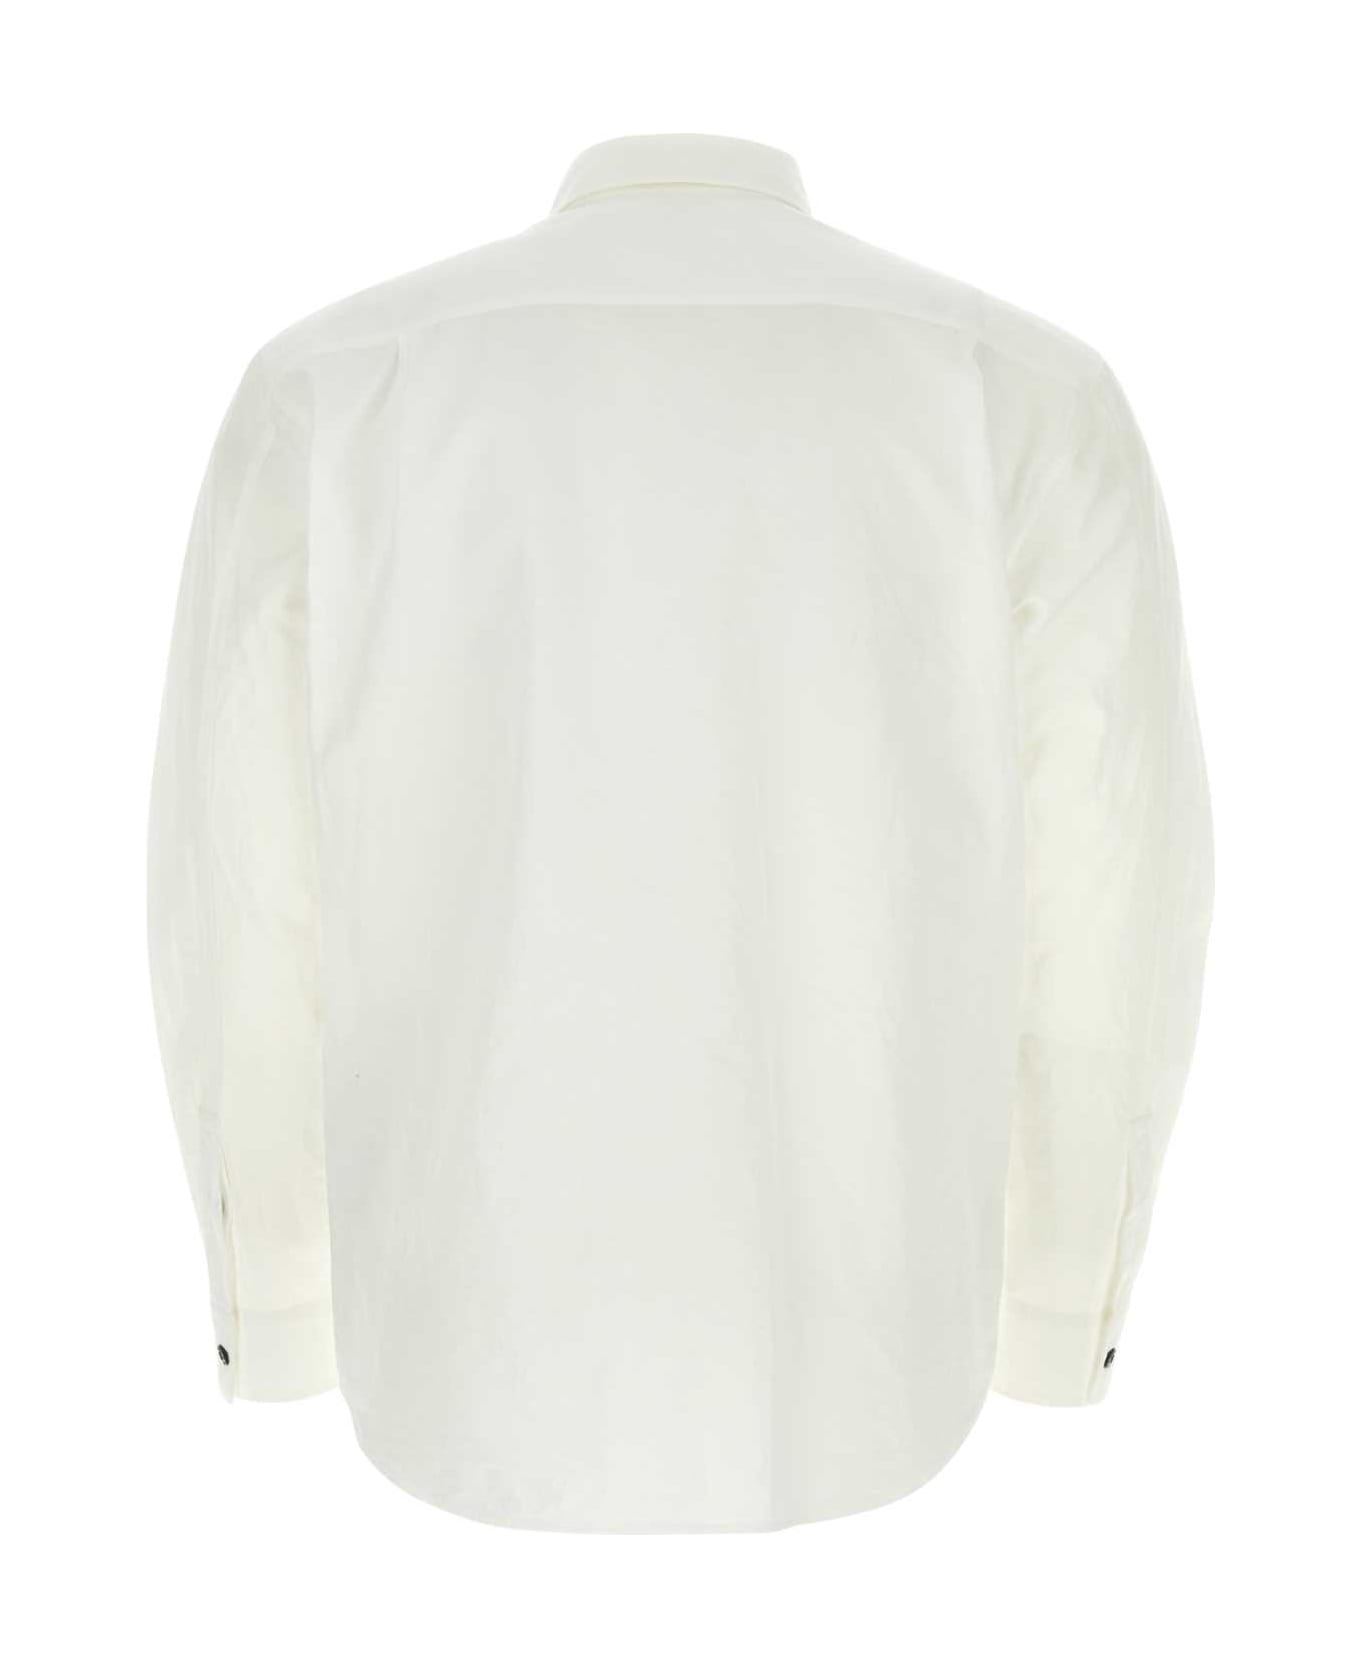 Stone Island White Cotton Blend Shirt - WHITE シャツ